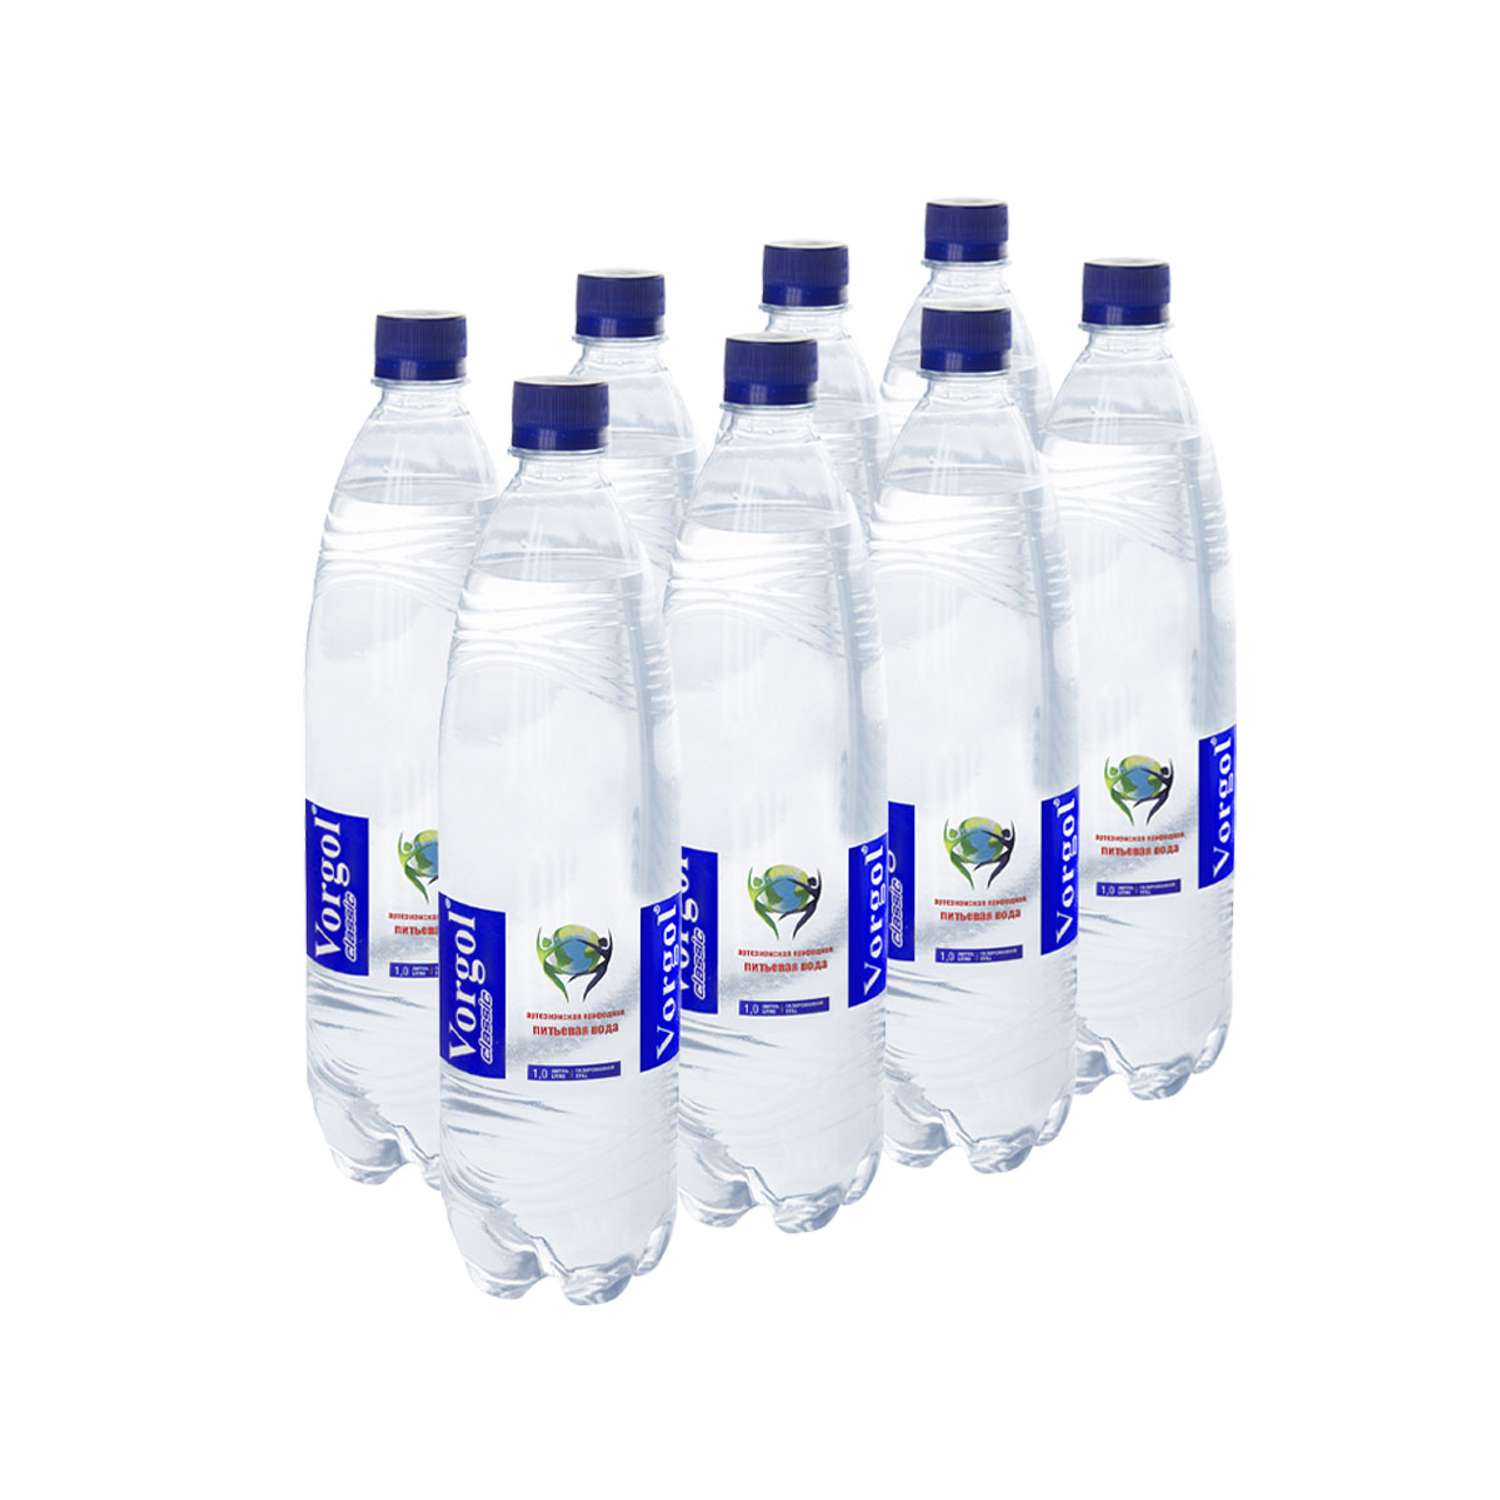 Вода питьевая Vorgol природная артезианская газированная 8 шт по 1л - фото 1